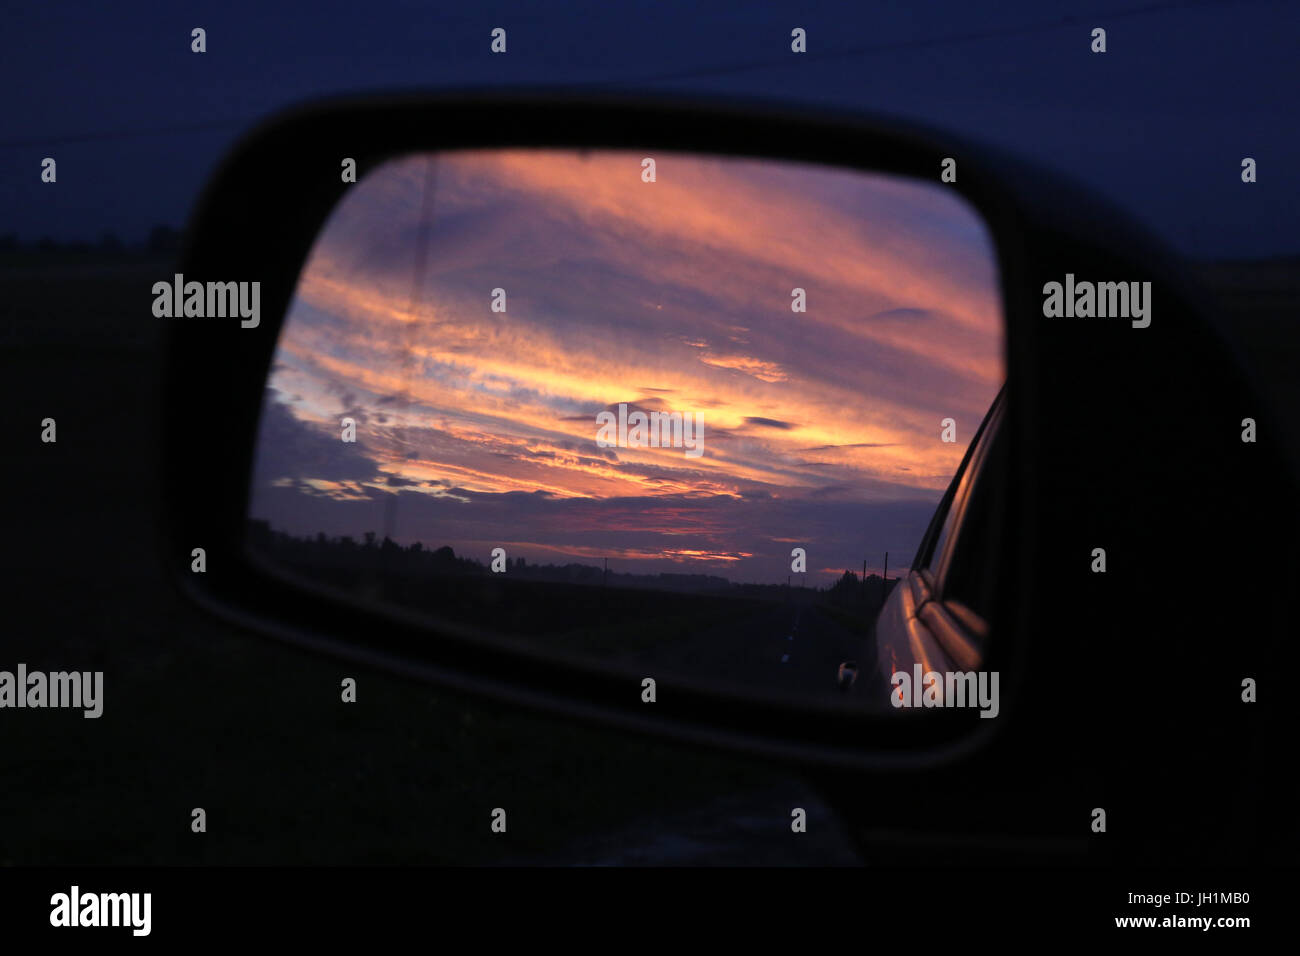 Sonnenuntergang spiegelt sich in einem Spiegel der hinteren Ansicht. Frankreich. Stockfoto